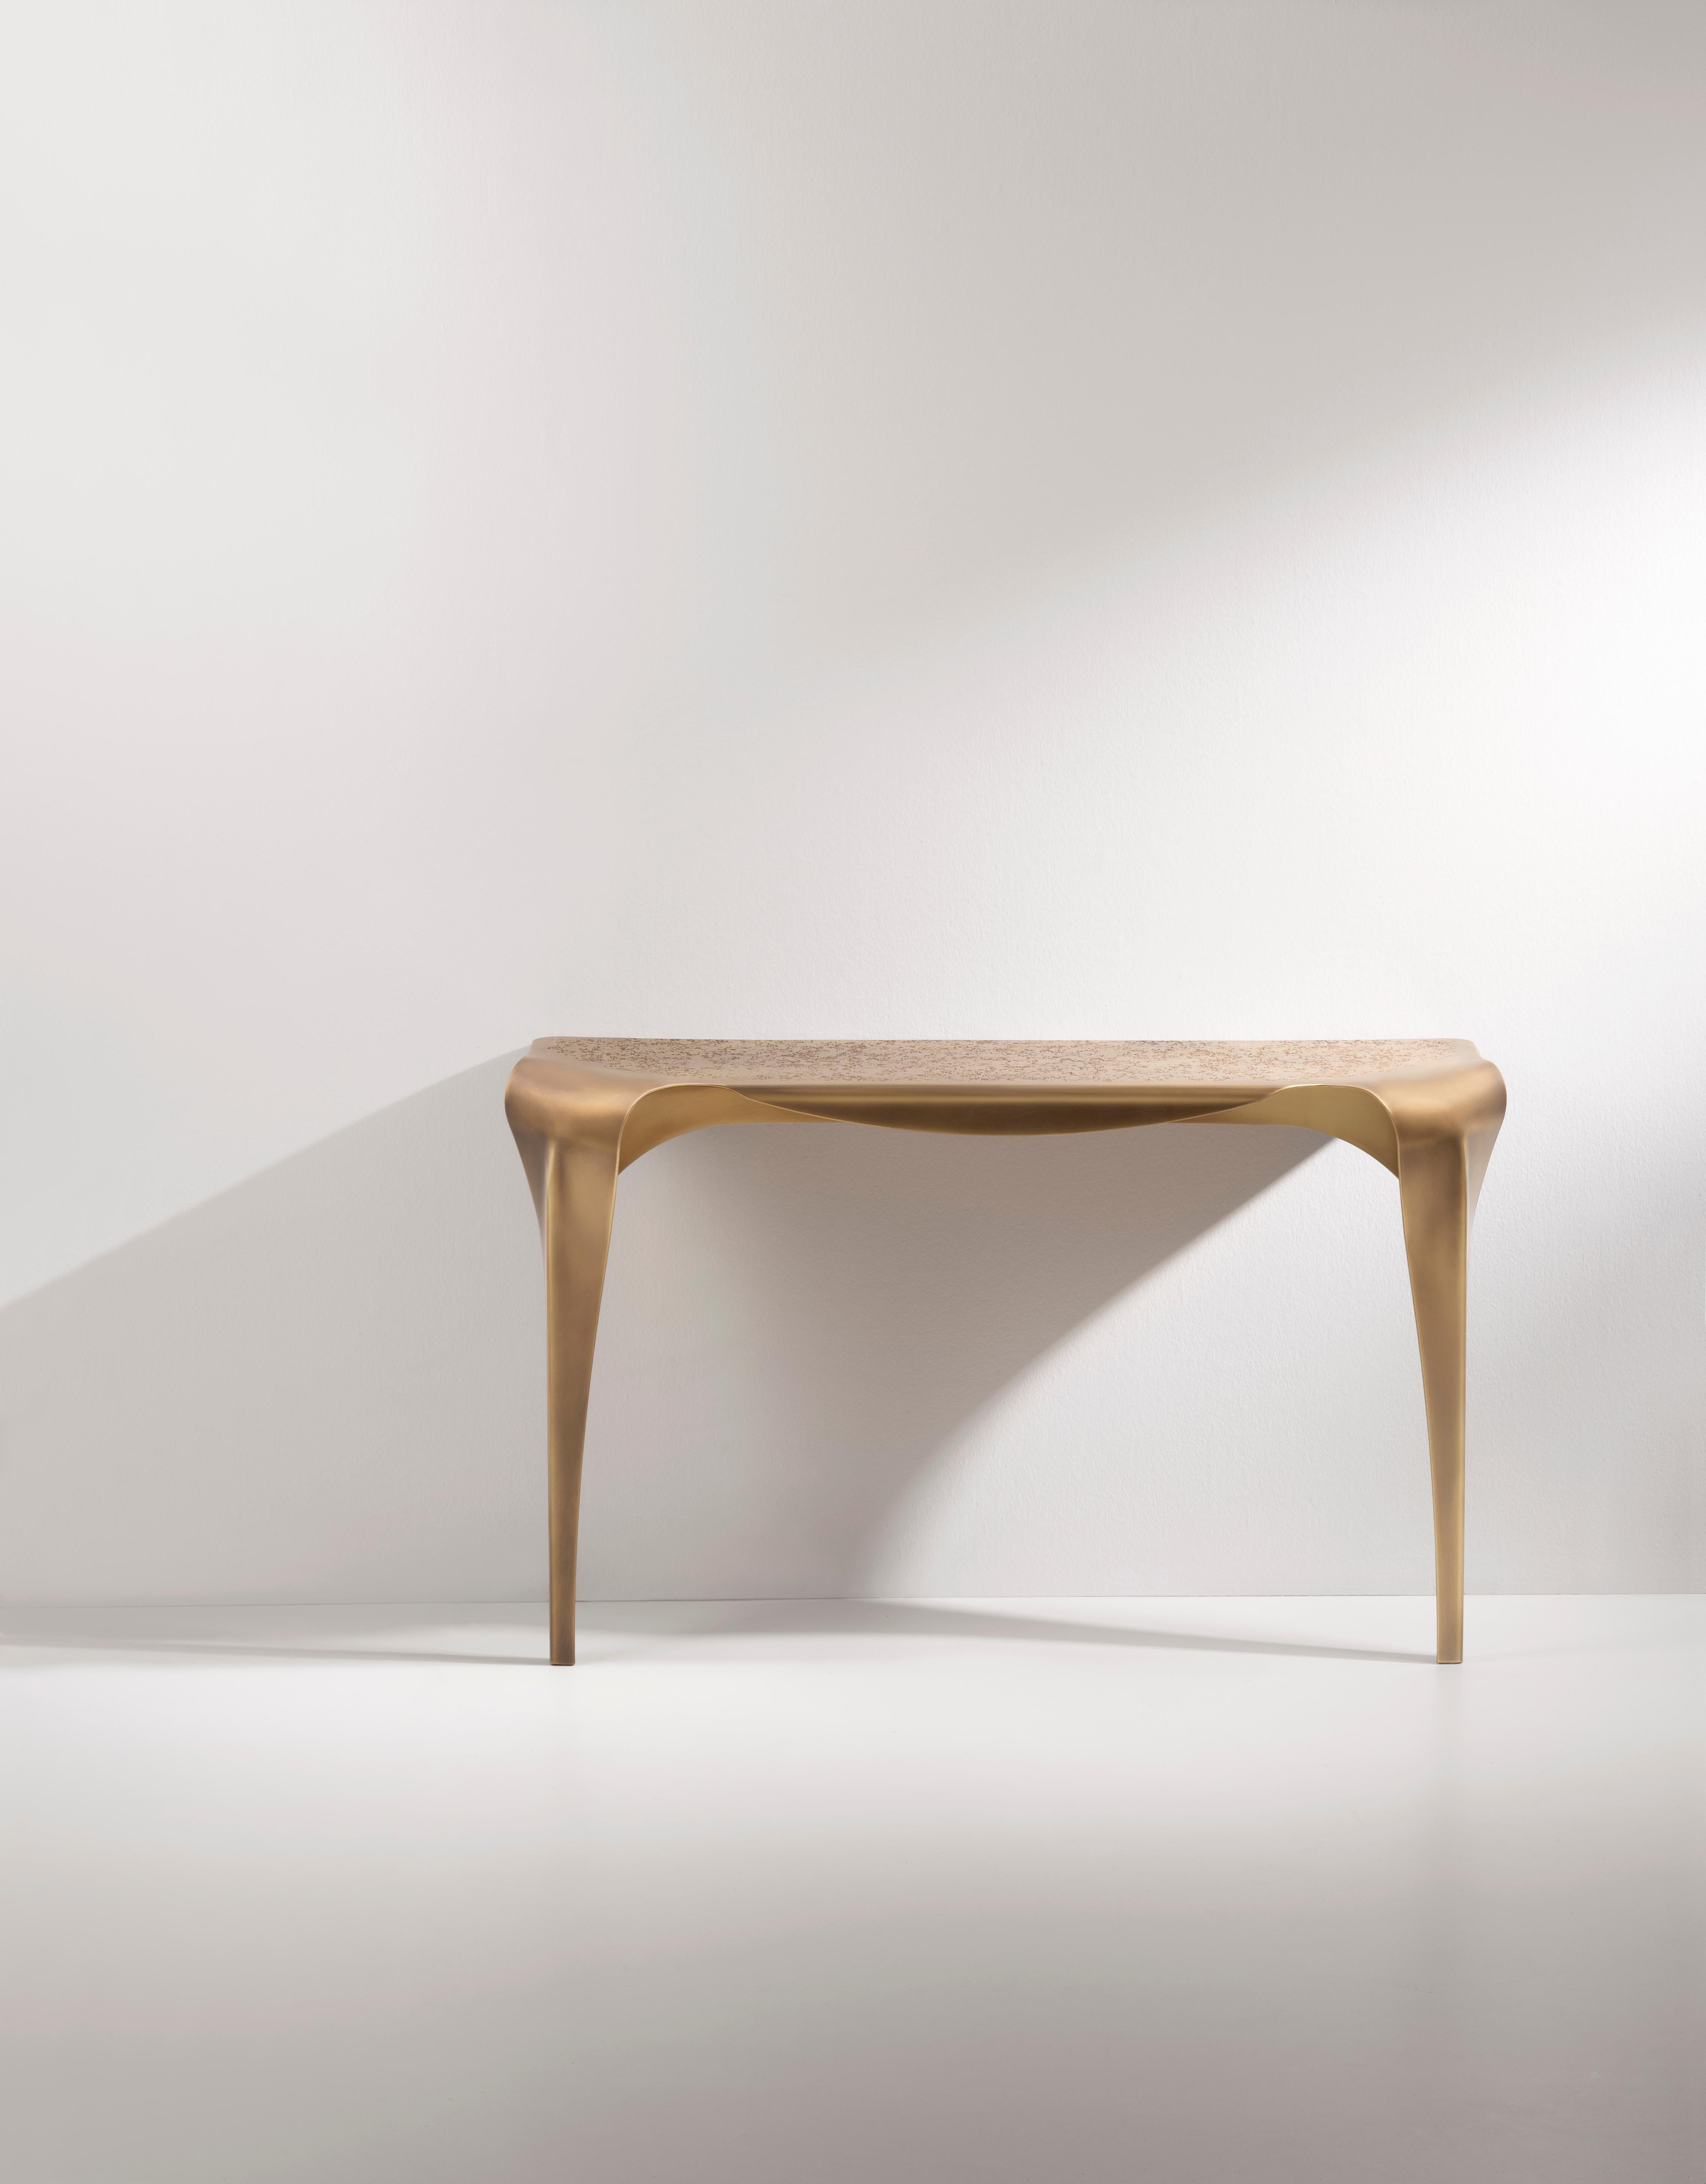 Inspiriert von dem gleichnamigen Tisch lehnt sich die Convivium-Konsole mit einer kurvenreichen und anmutigen Haltung an die Wand. Dieses vollständig aus Messing gefertigte Stück zeichnet sich durch die DeErosion-Behandlung der Platte und die